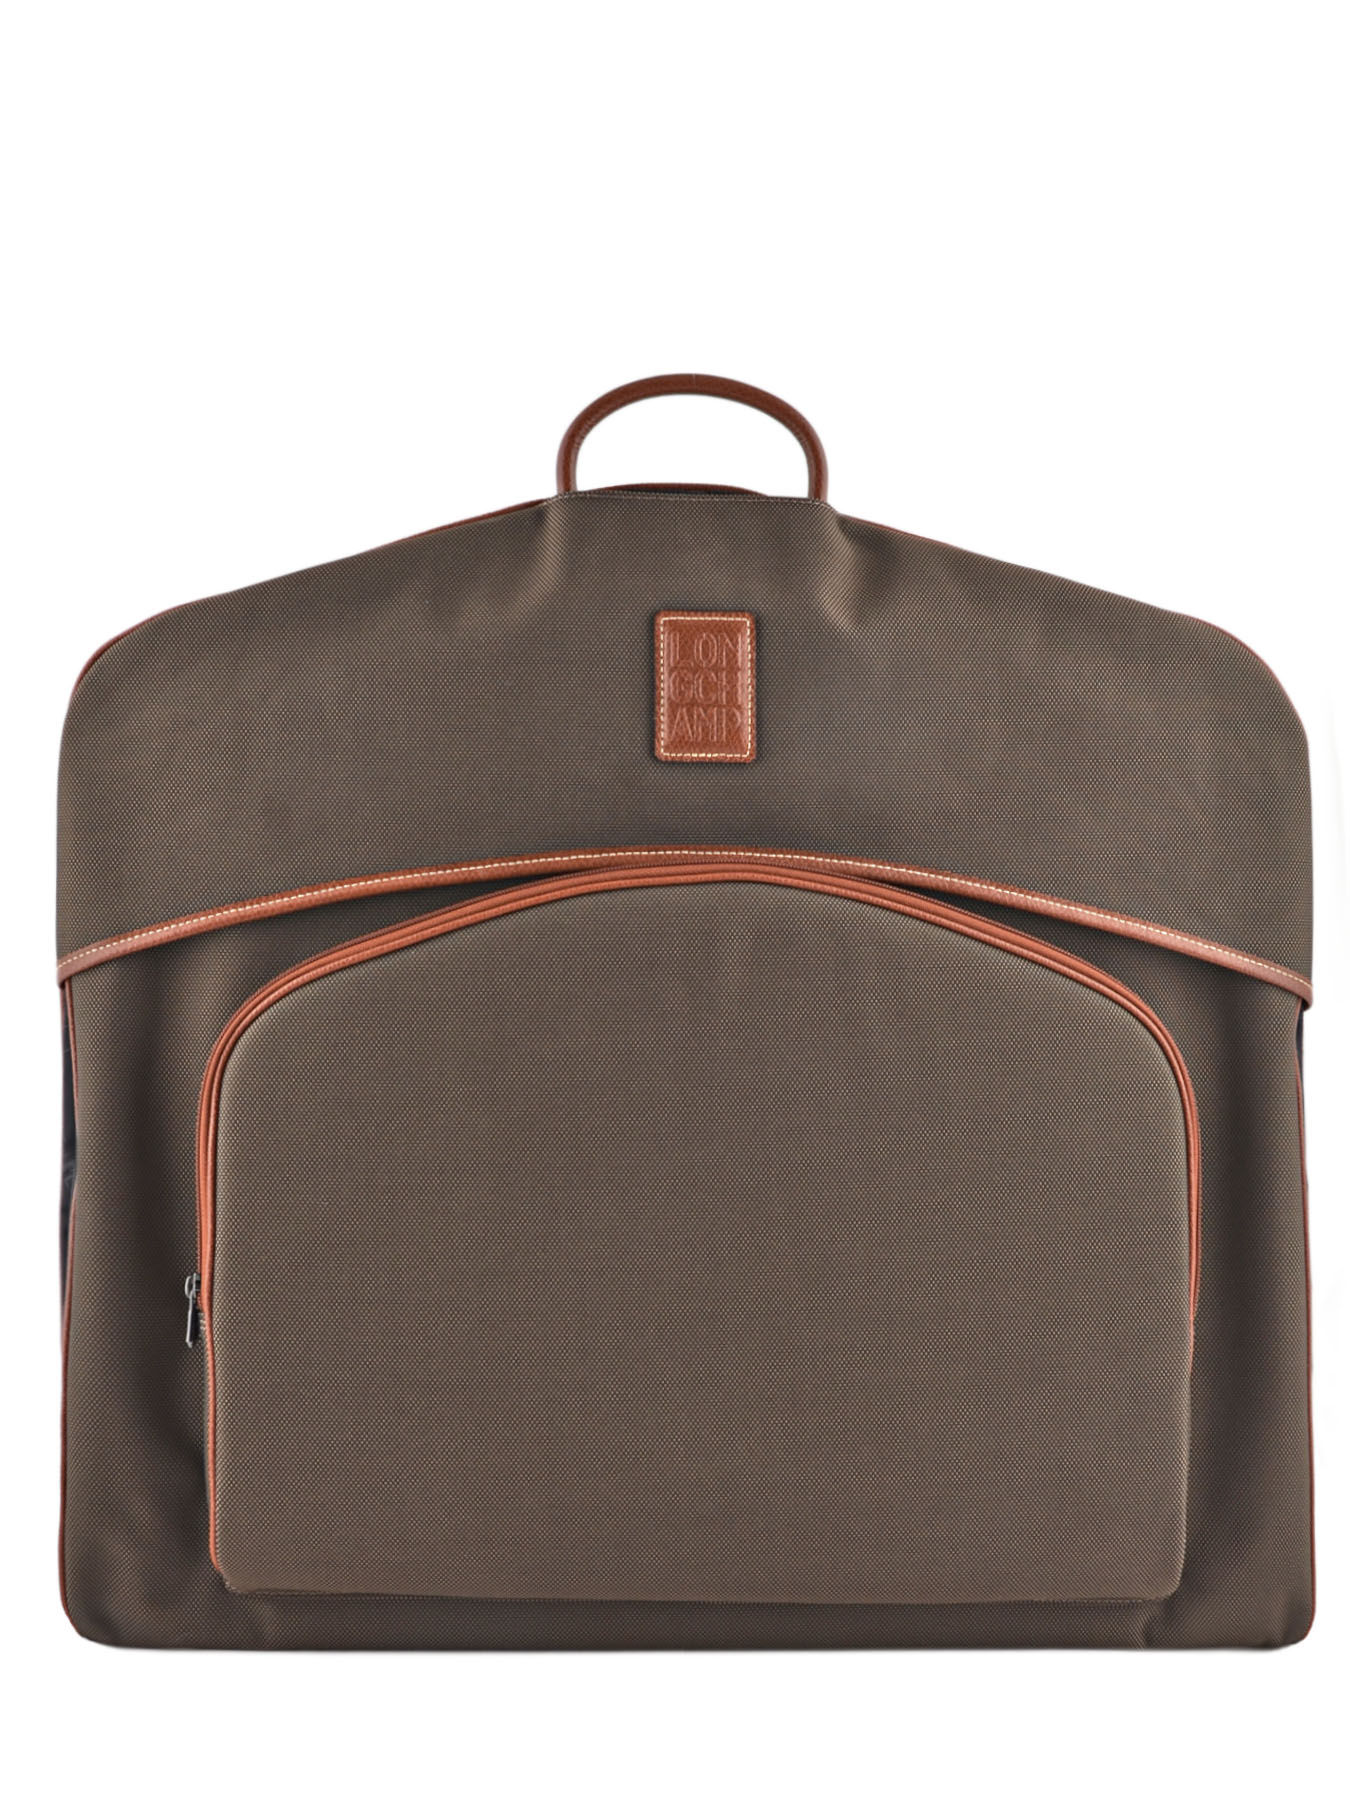 Porte habits Longchamp 1347080 brun en vente au meilleur prix